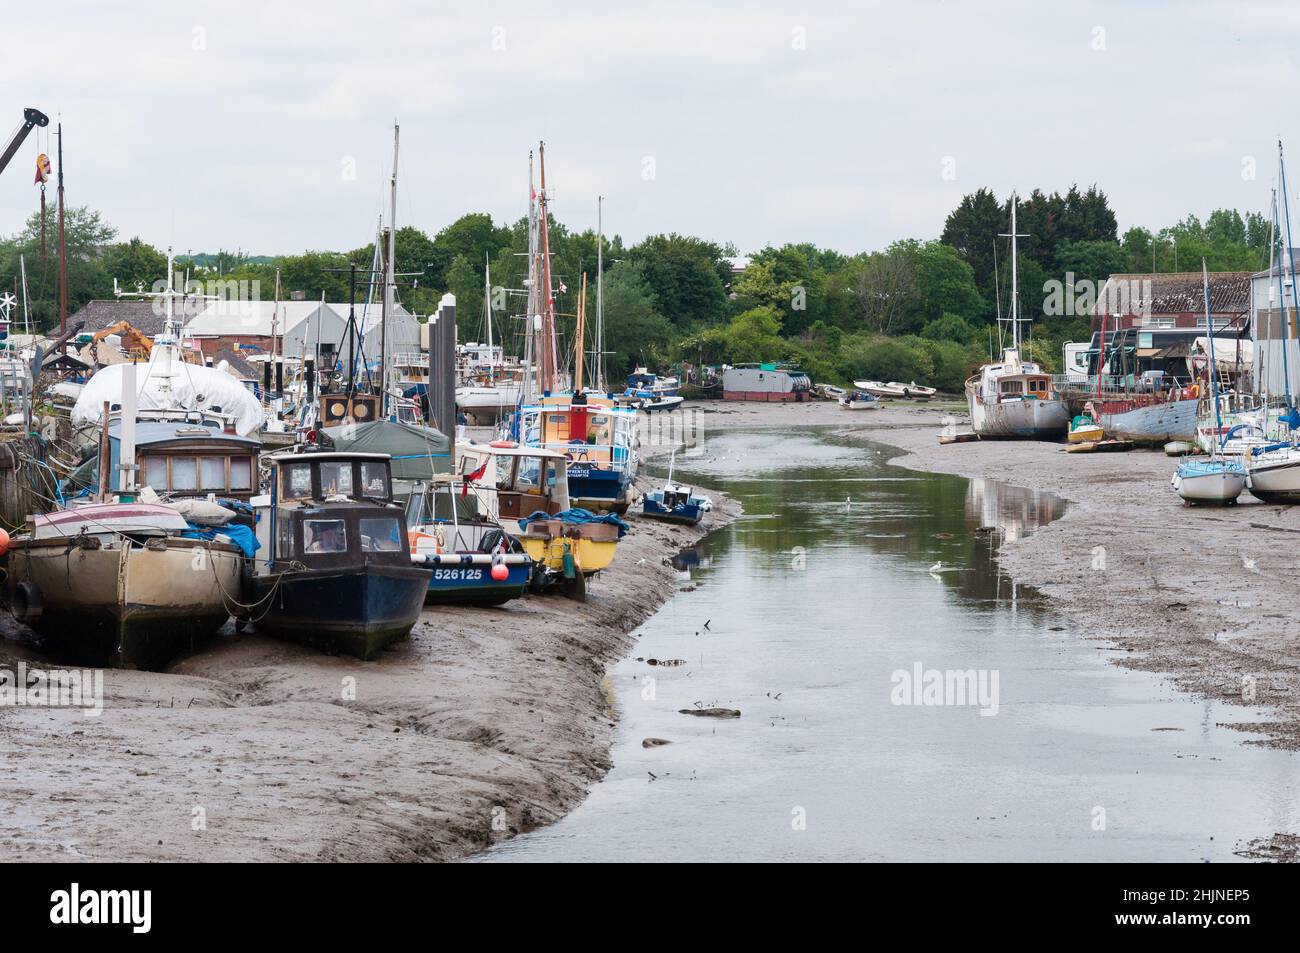 Bassa marea con barche a terra e yacht a vela ormeggiati nel fiume Medina, Newport, Isola di Wight, Inghilterra, Regno Unito Foto Stock